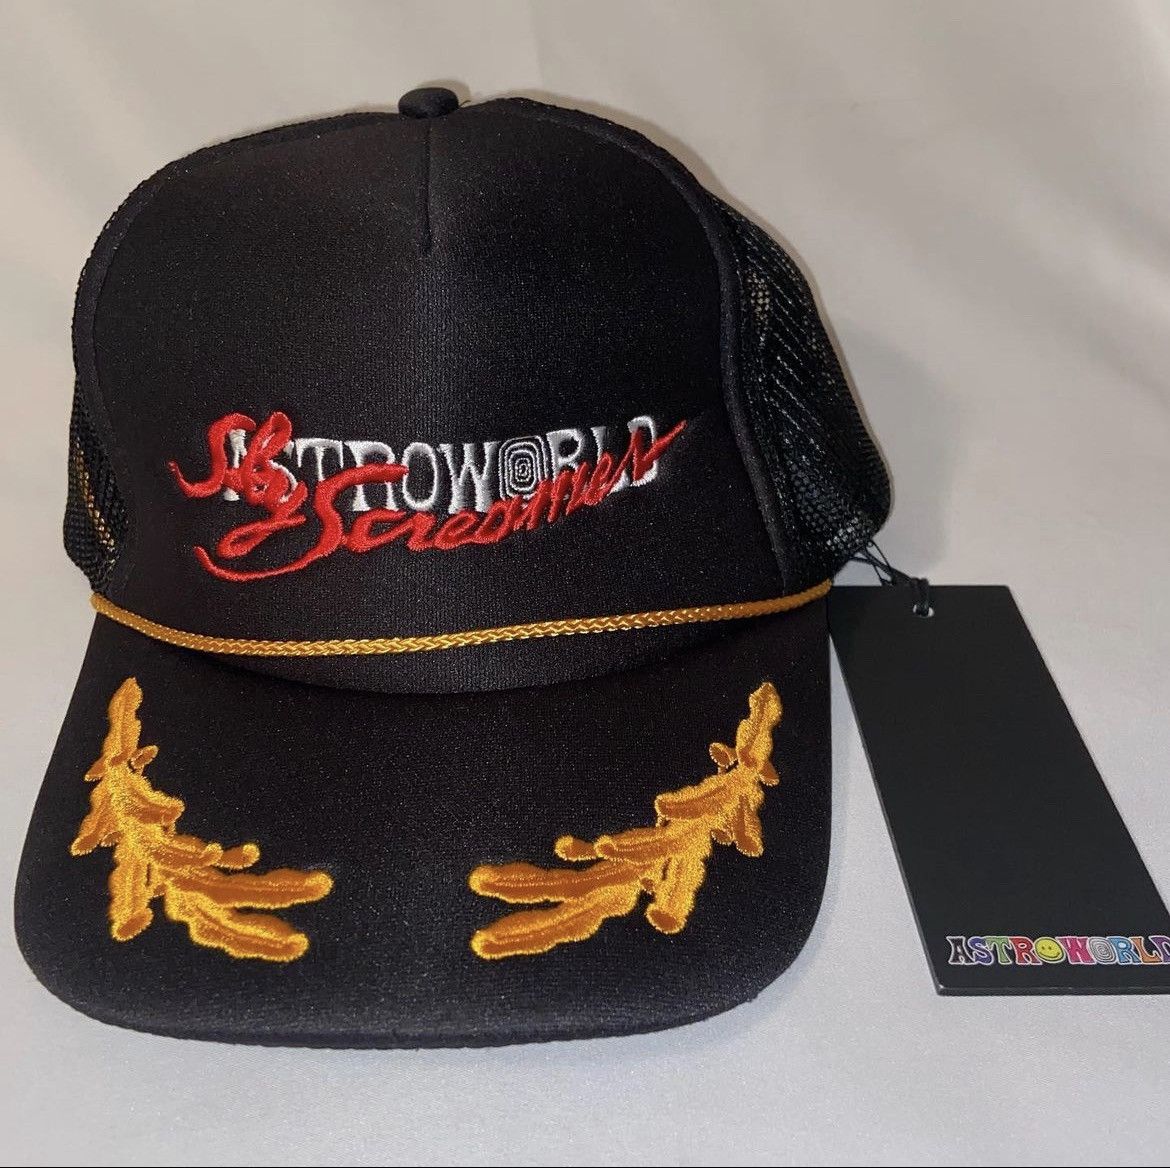 Travis Scott Astroworld x DSM NYC Screamers Trucker Hat | Grailed